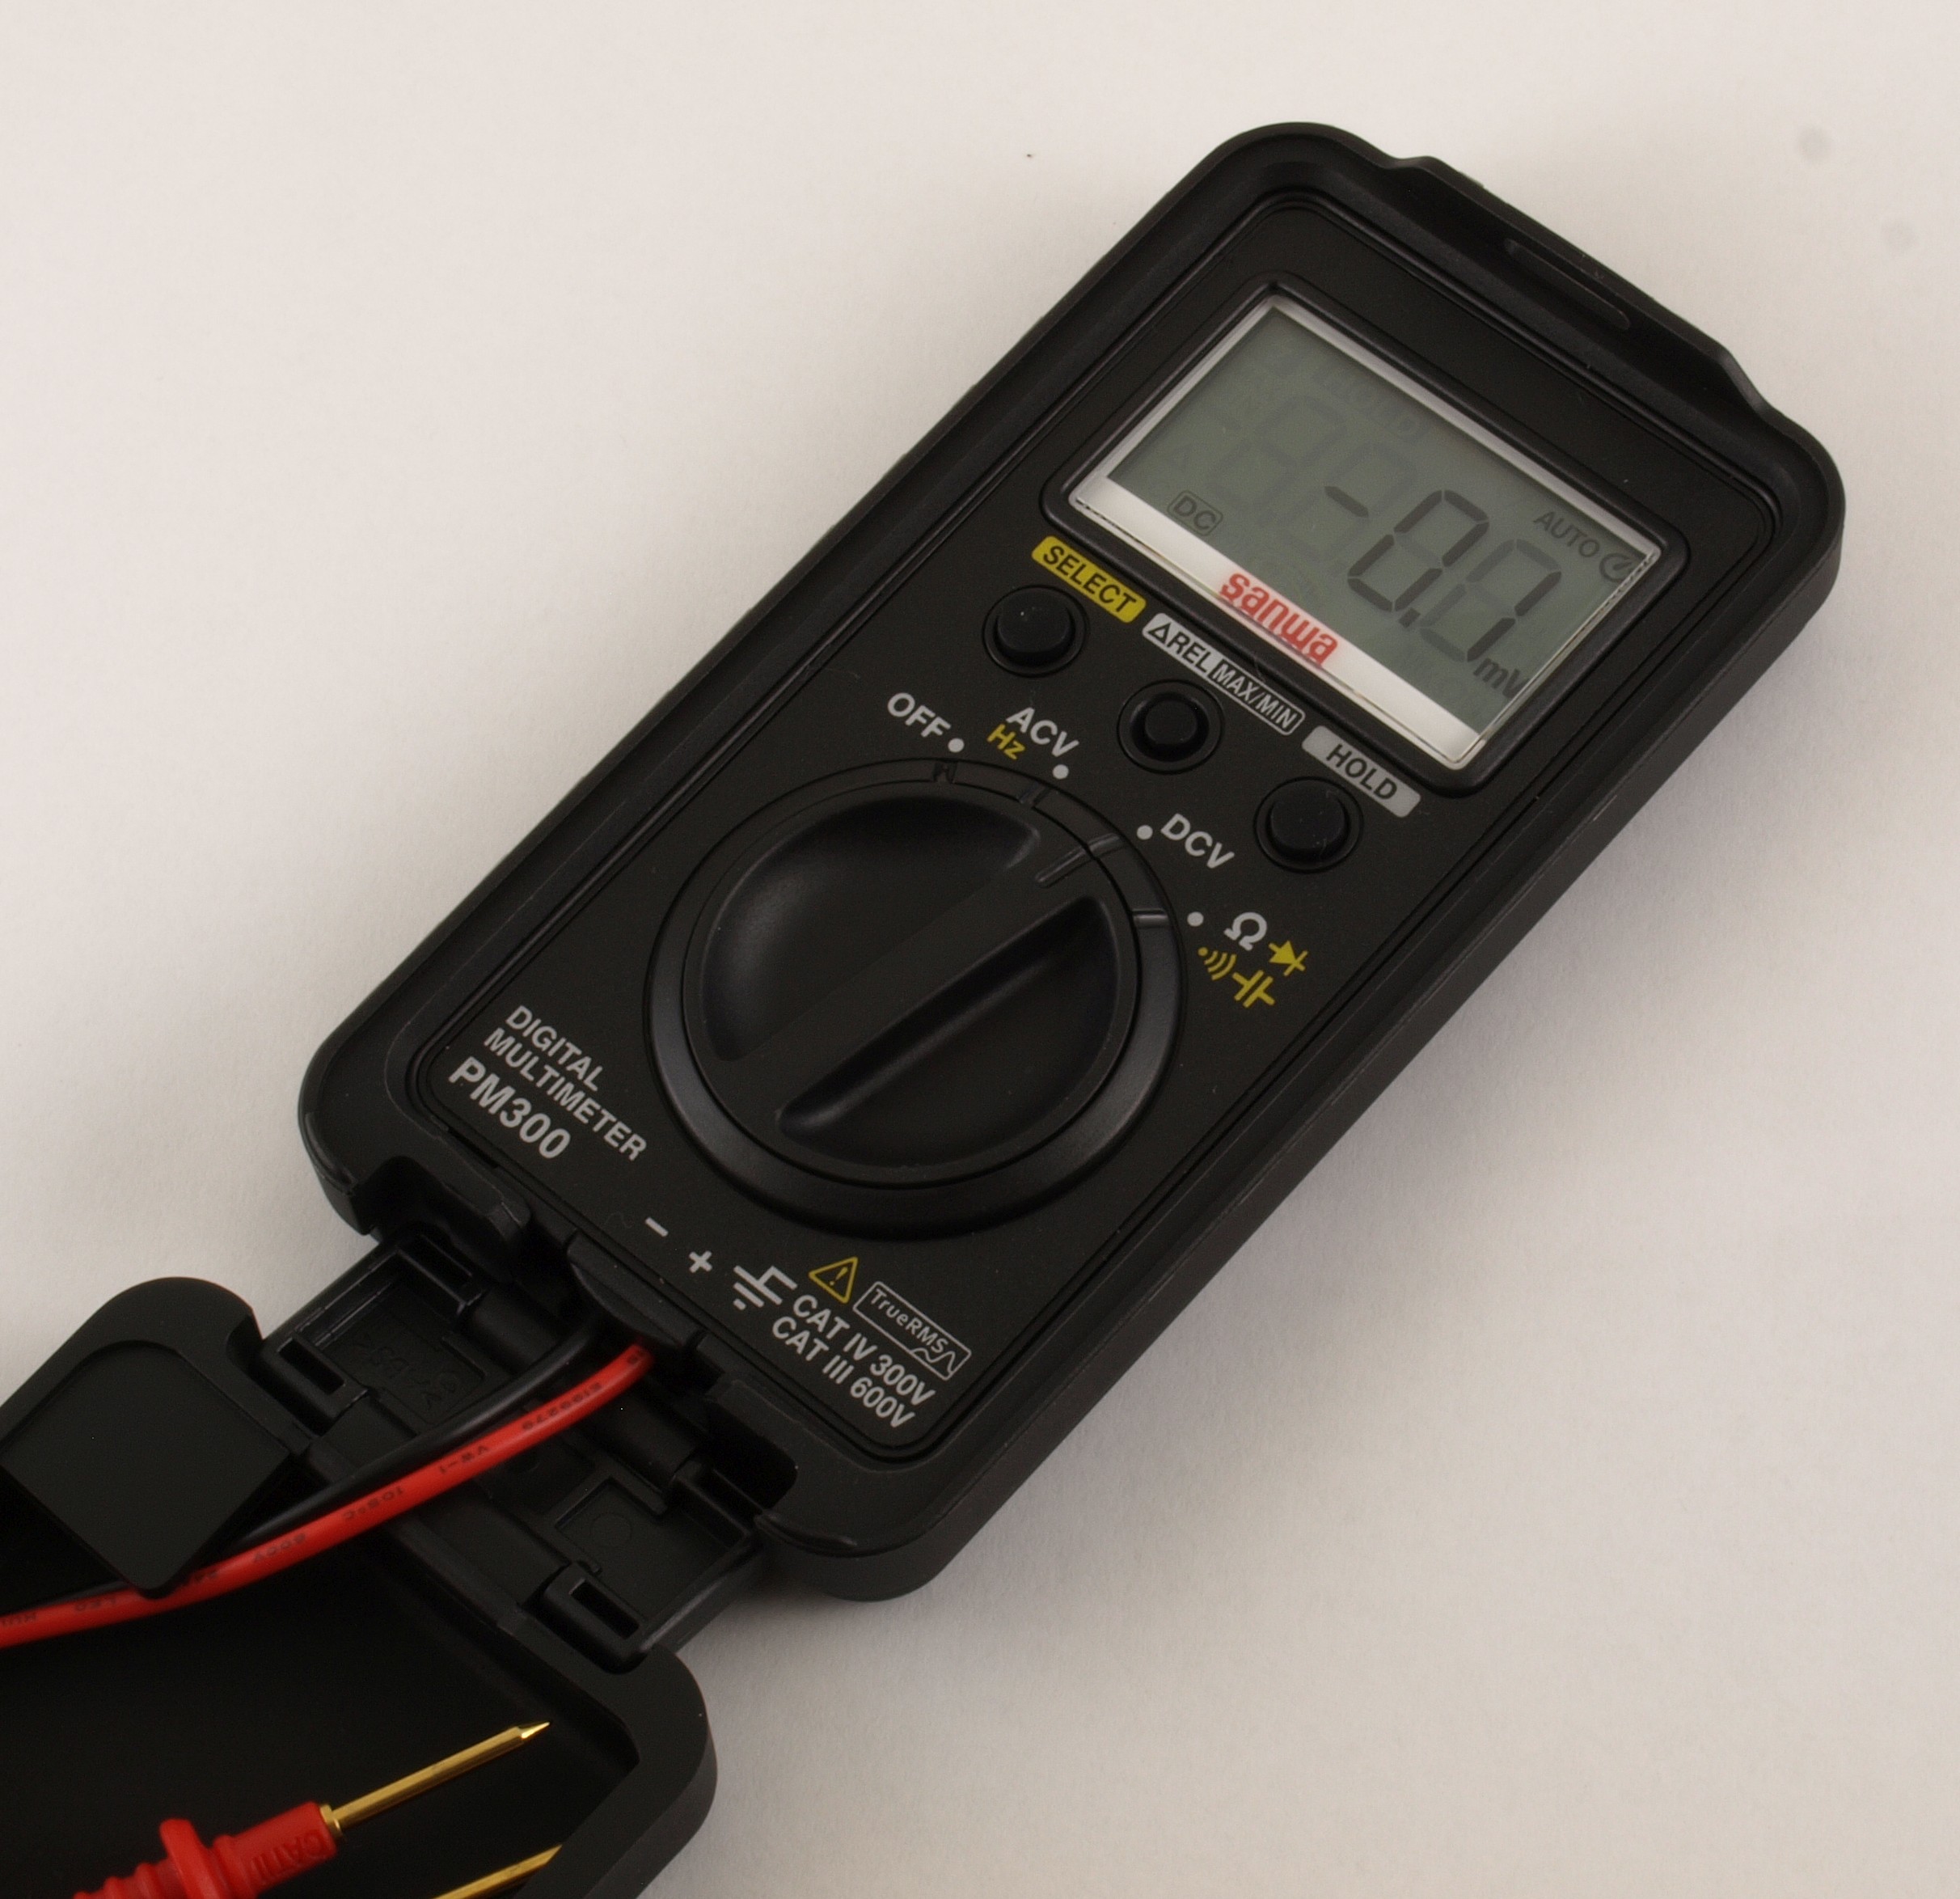 Sanwa PM300  Pocket Multimeter  EEVblog